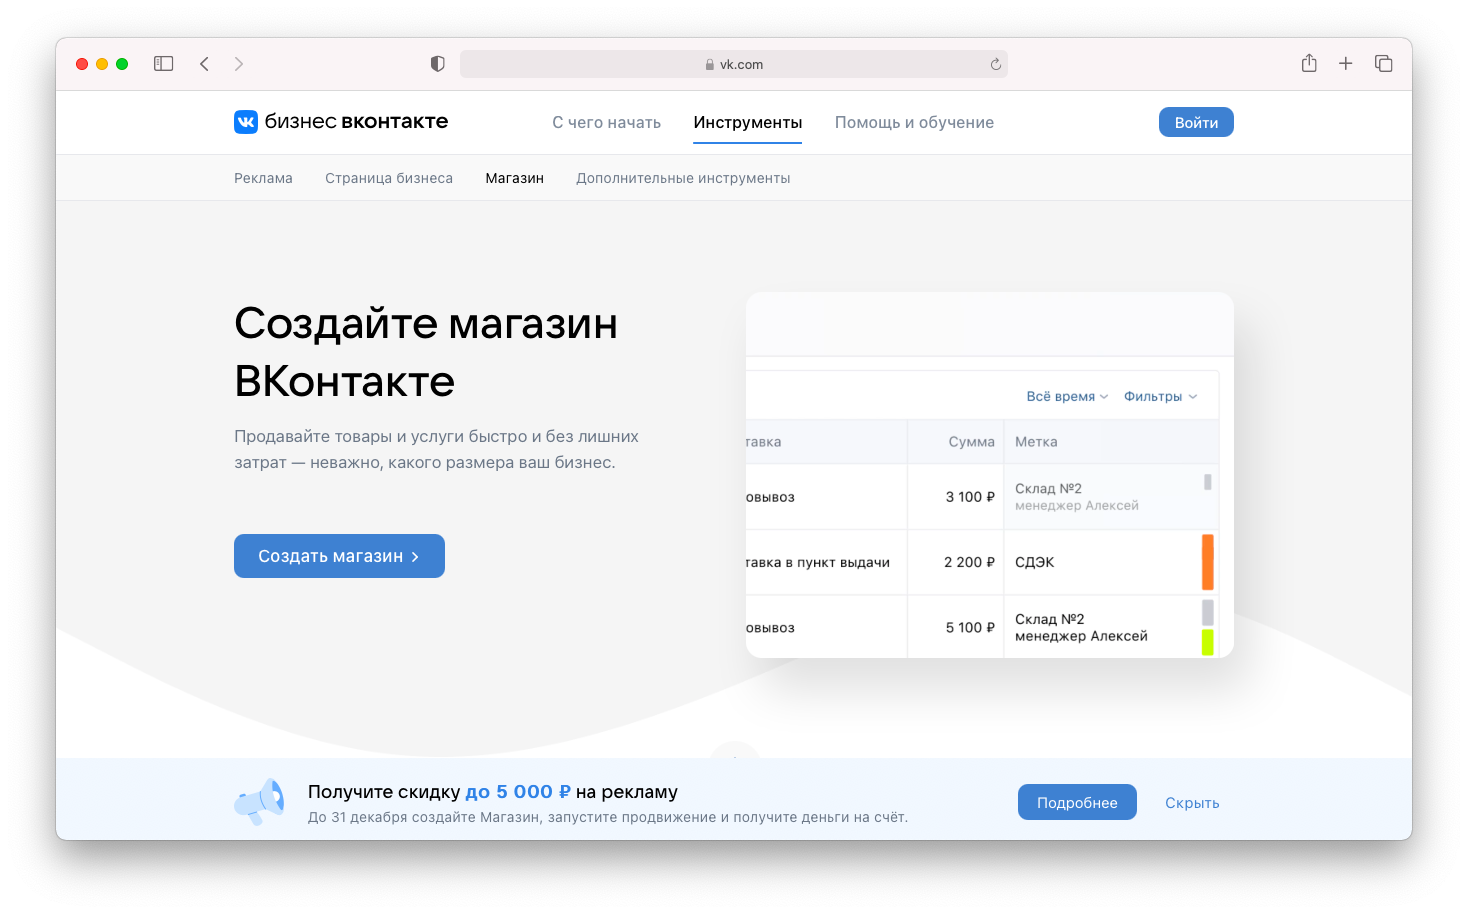 Как оформить новое меню в группе ВКонтакте